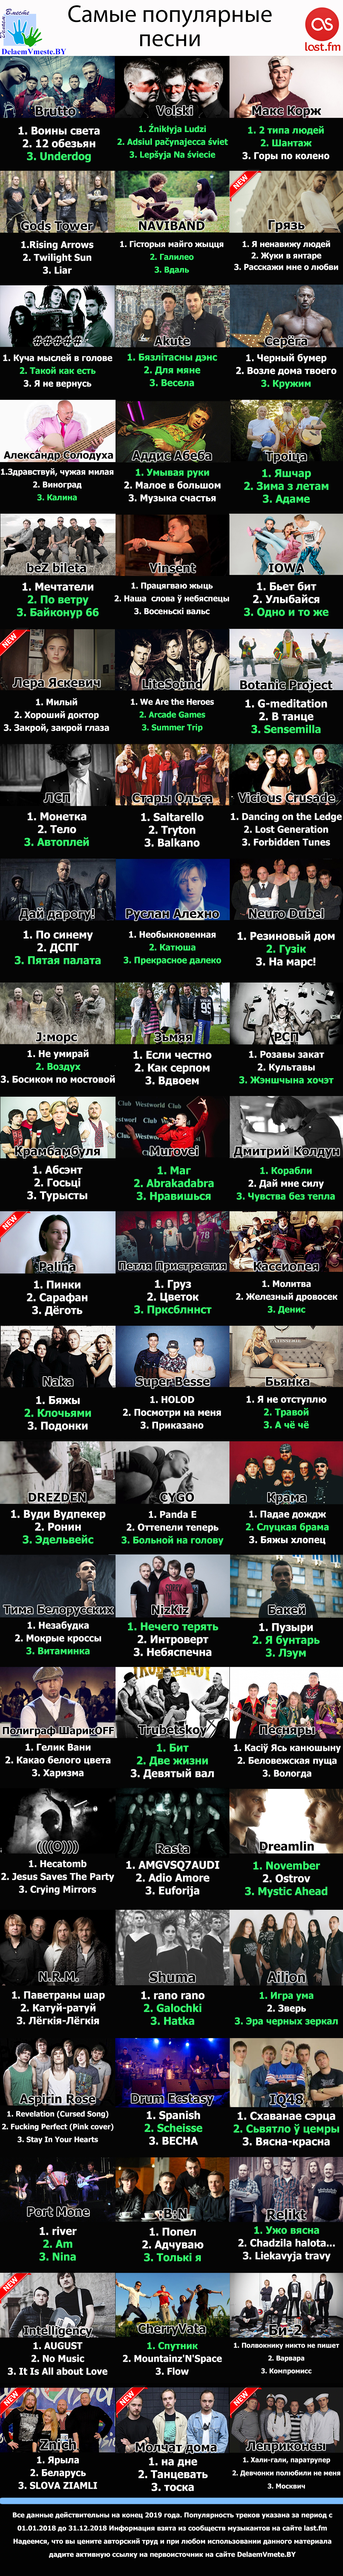 Лучшие песни белорусских музыкантов 2019